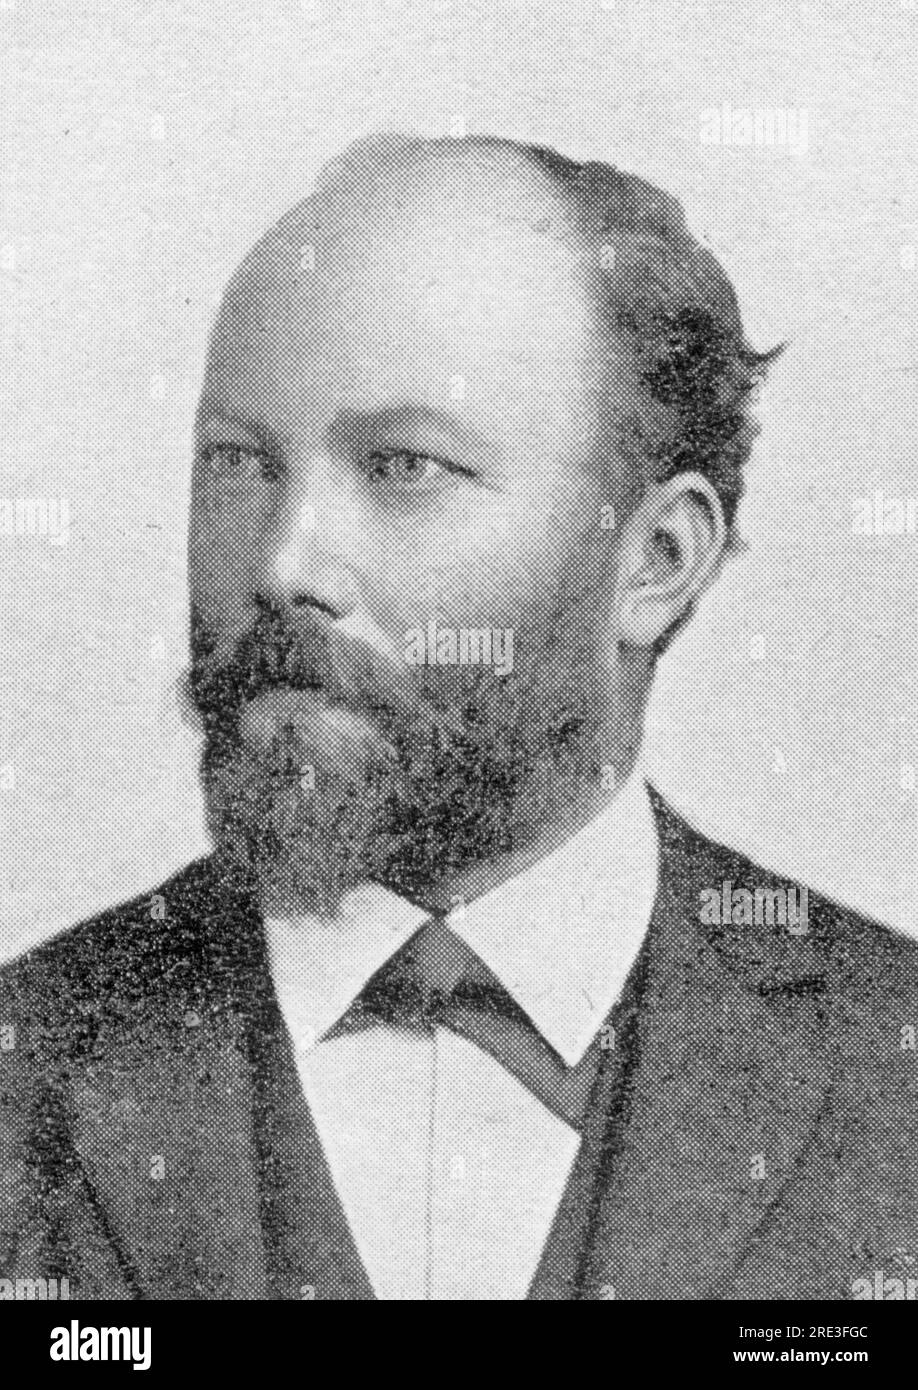 Wihan, Hanus, 5.6.1855 - 1,5.1920, chelista checo y pedagogo de música, alrededor de 1905, ADDITIONAL-RIGHTS-CLEARANCE-INFO-NOT-AVAILABLE Foto de stock